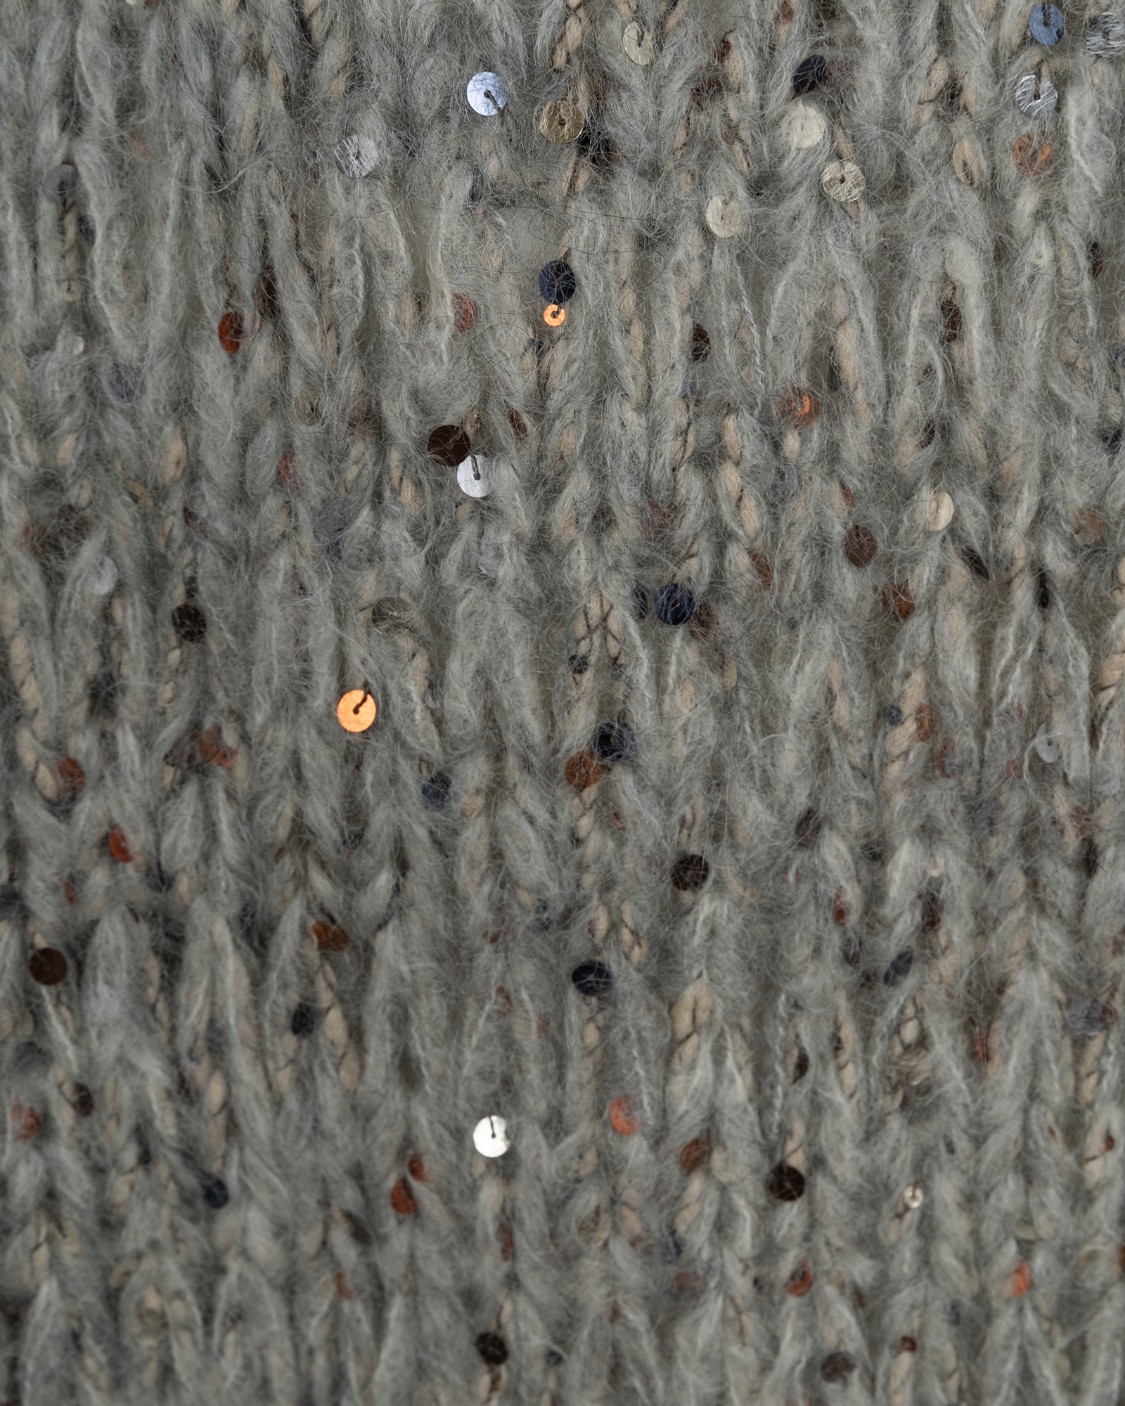 shop BRUNELLO CUCINELLI Saldi Pull: Brunello Cucinelli maglia "Dazzling" in Mohair, lana e cotone.
Inserti luminosi di paillettes.
Texture a treccia.
Composizione: 42% lana mohair 40% cotone 8% poliacrilico 6% poliammide 4% lana.
Made in Italy.. MBN622000-CAI52 number 8413670